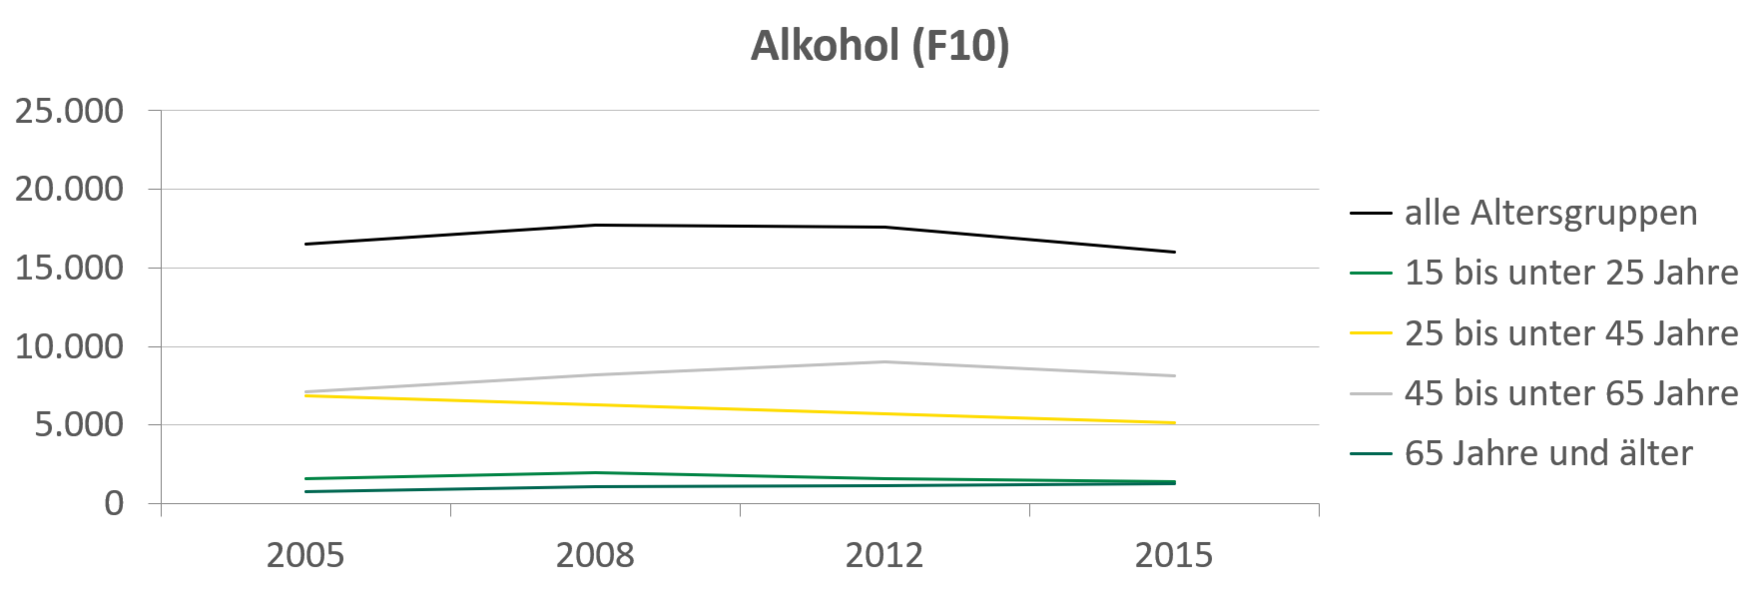 Die Anzahl der Fälle von stationärer Suchtbehandlung ist von 2008 auf 2012 in der Altersgruppe der 45- bis unter 65-Jährigen gestiegen, bis 2015 aber wieder auf etwas über 6.000 abgesunken. Die Fallzahlen für alkoholbezogene Diagnosen sind für die 45-65-Jährigen leicht angestiegen, für alle anderen Gruppen aber beständig gesunken.